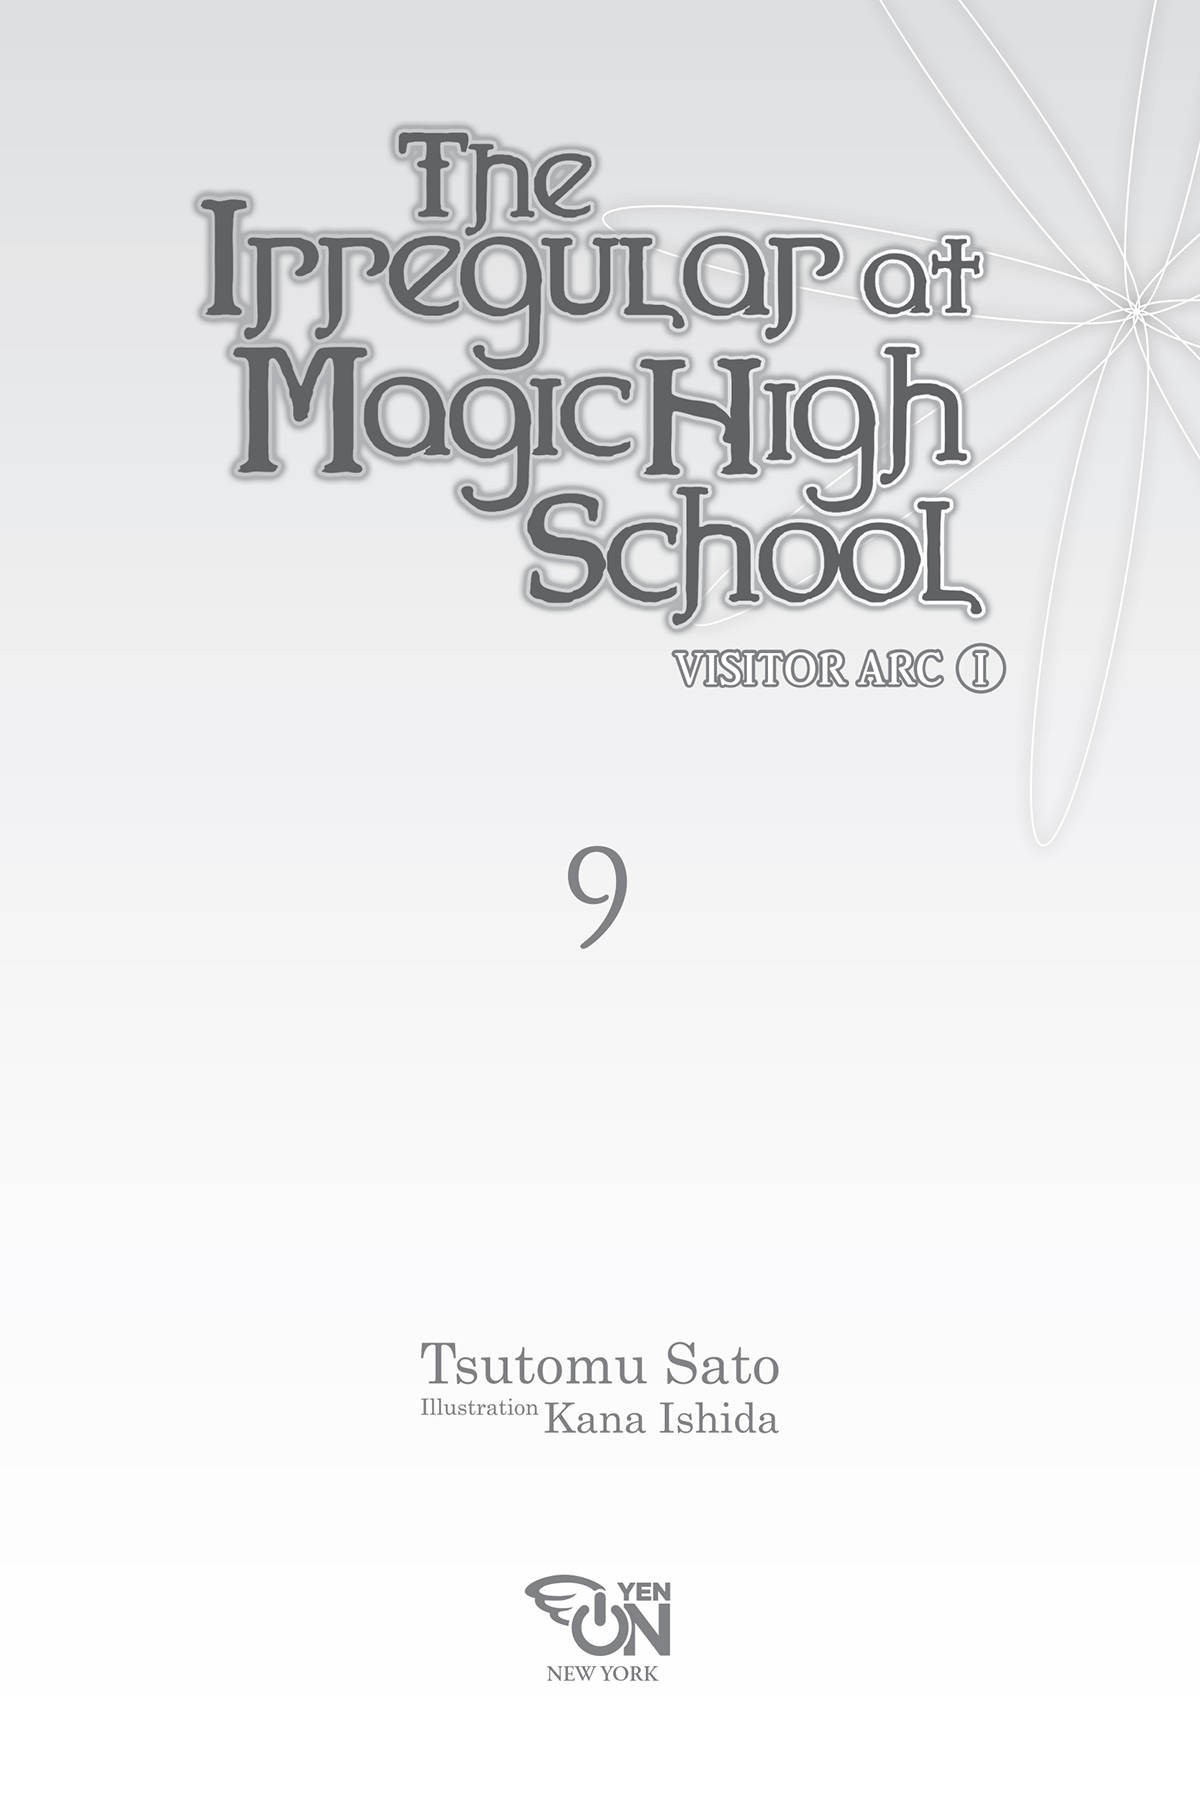 [Hàng thanh lý miễn đổi trả] The Irregular At Magic High School, Volume 09: Visitor Arc I (Light Novel)